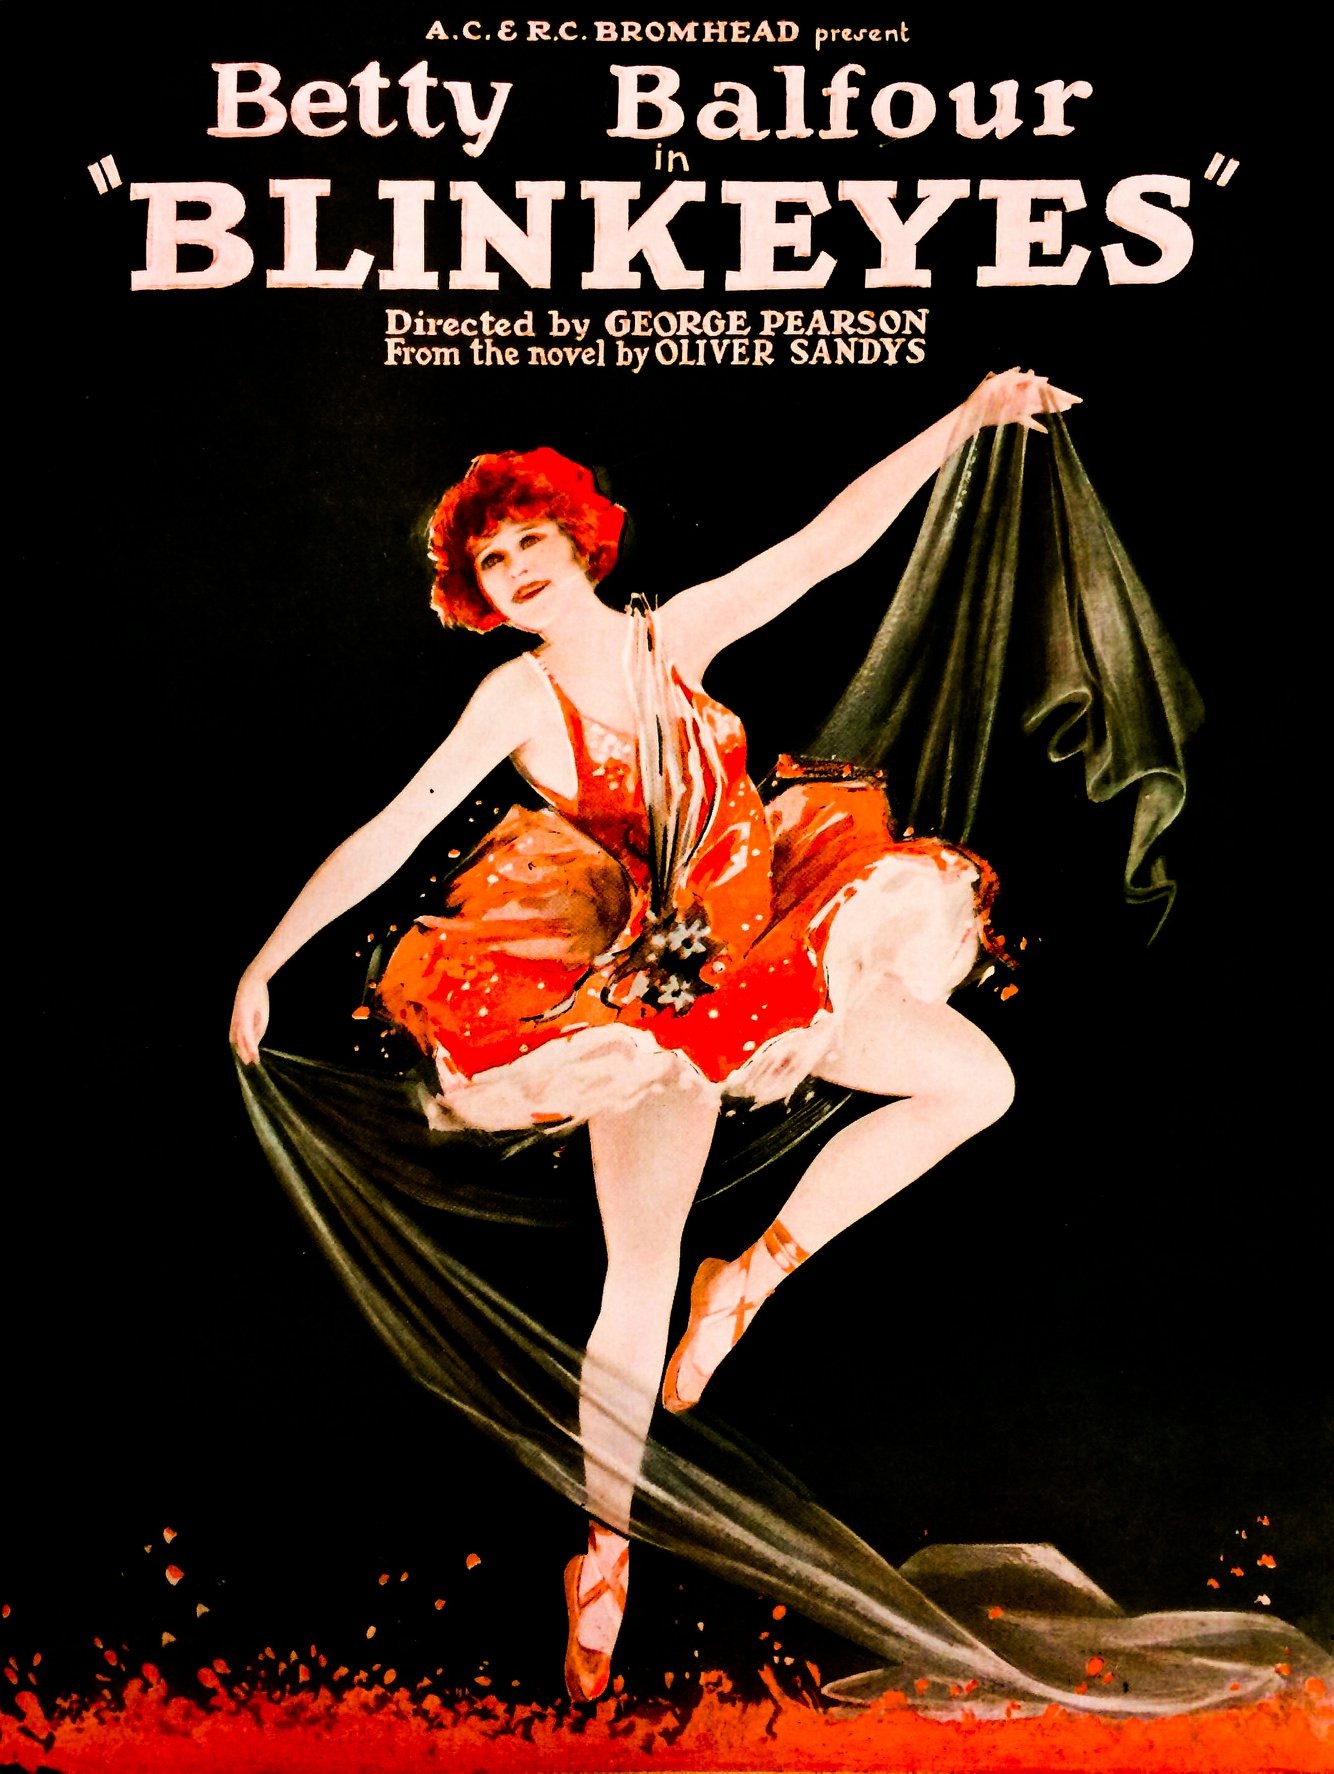 Blinkeyes